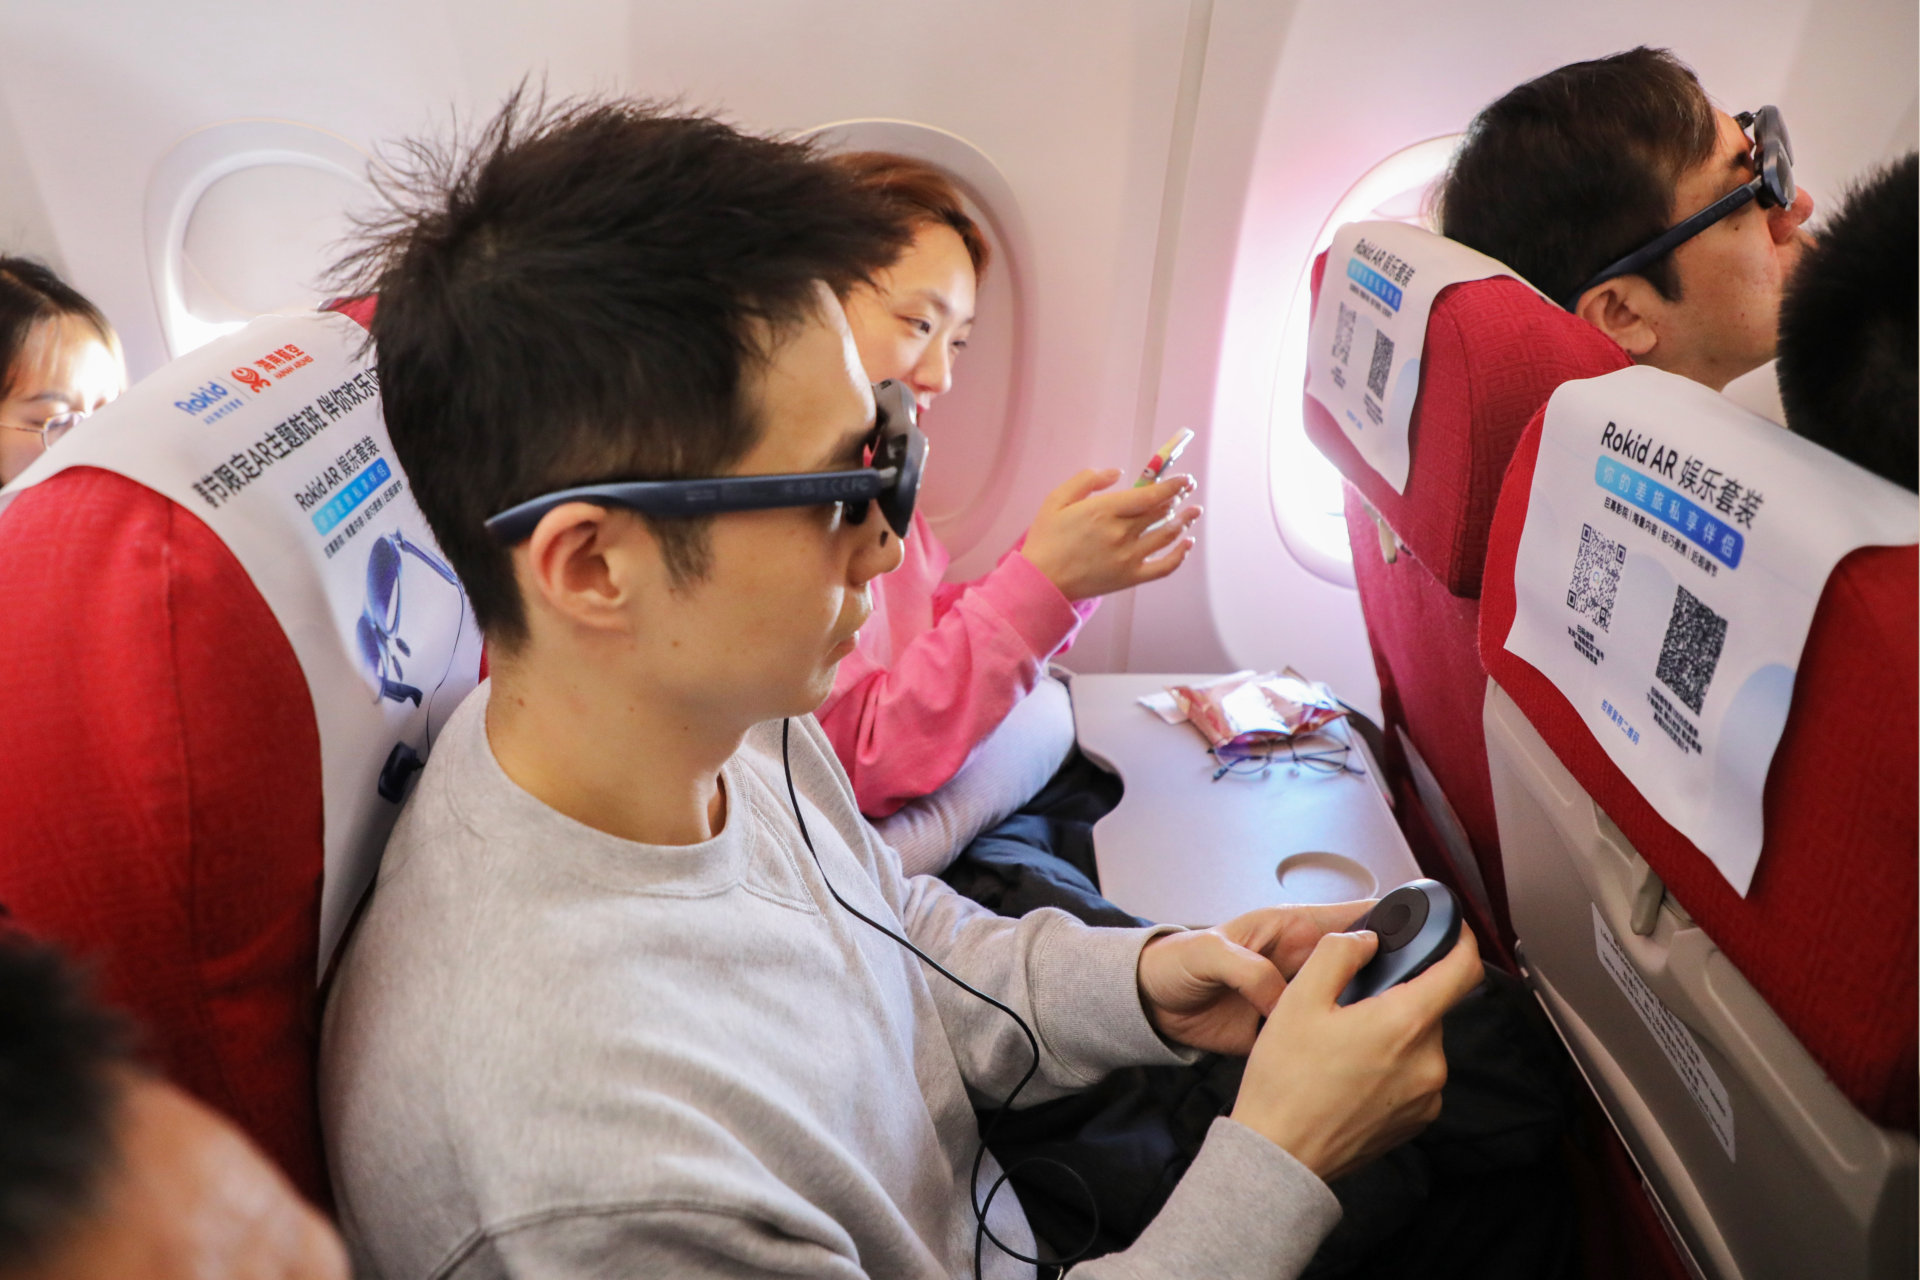 Gli occhiali intelligenti Rokid Max e la stazione Rokid sono mostrati in uso su un volo di Hainan Airlines.